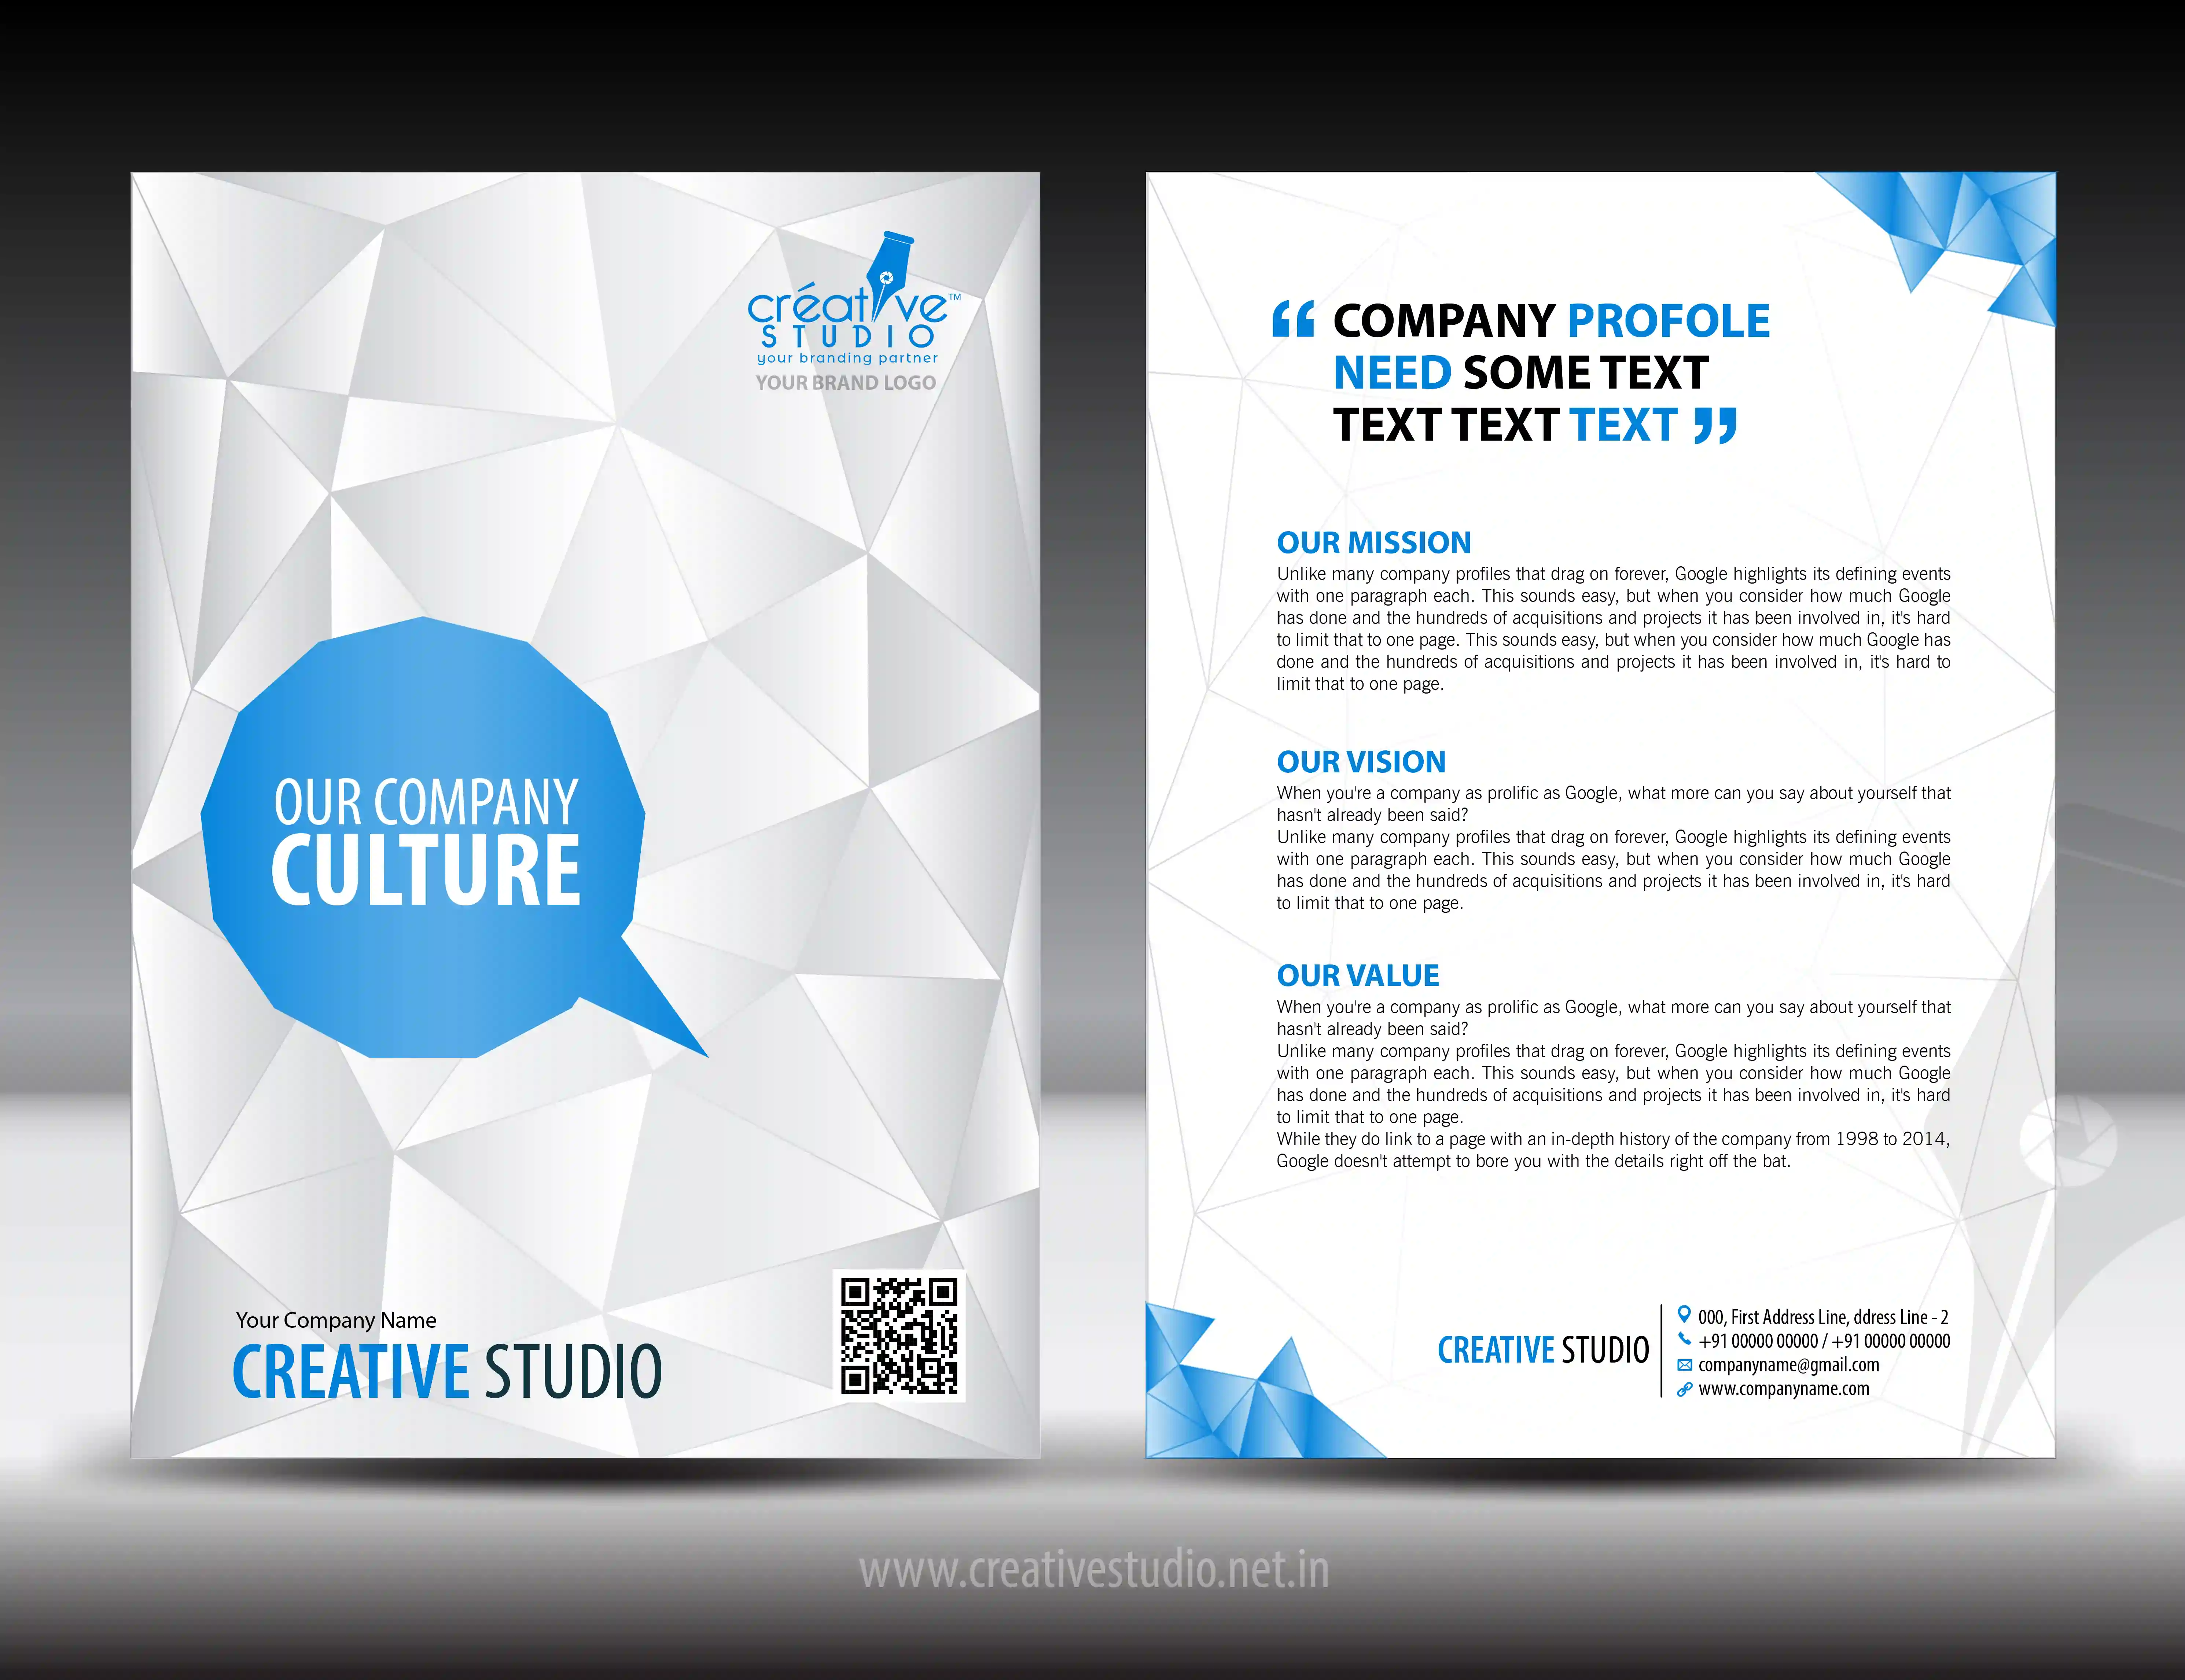 COMPANY PROFILE 06 01 - Company Profile Design Service by Creative Studio